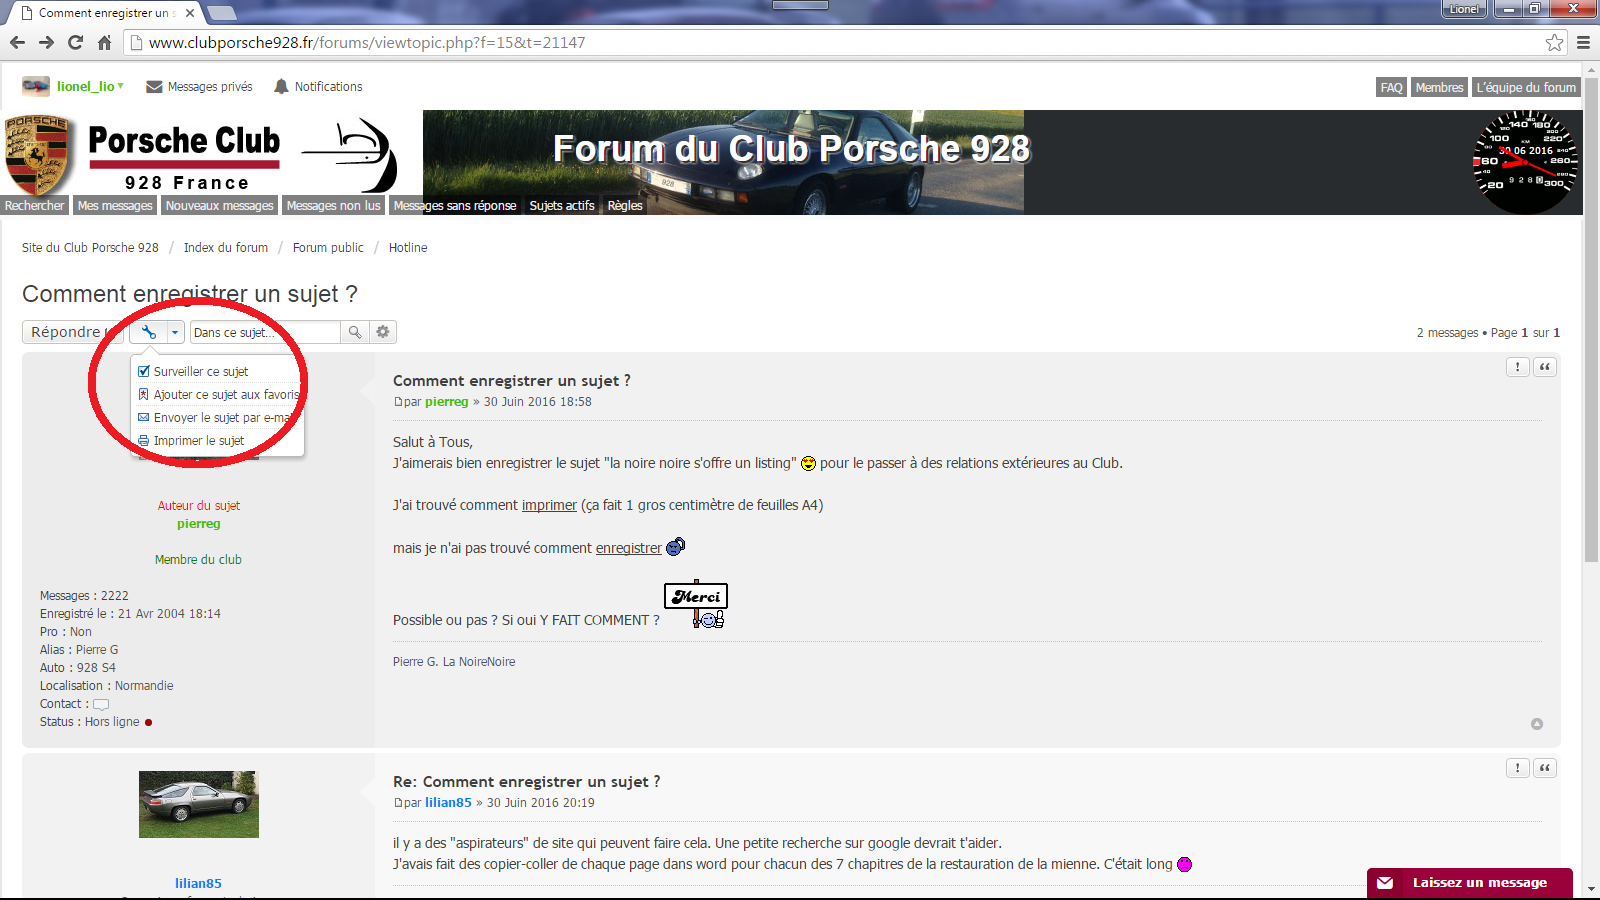 Forum du club porsche 928 . comment enregistrer un sujet.png